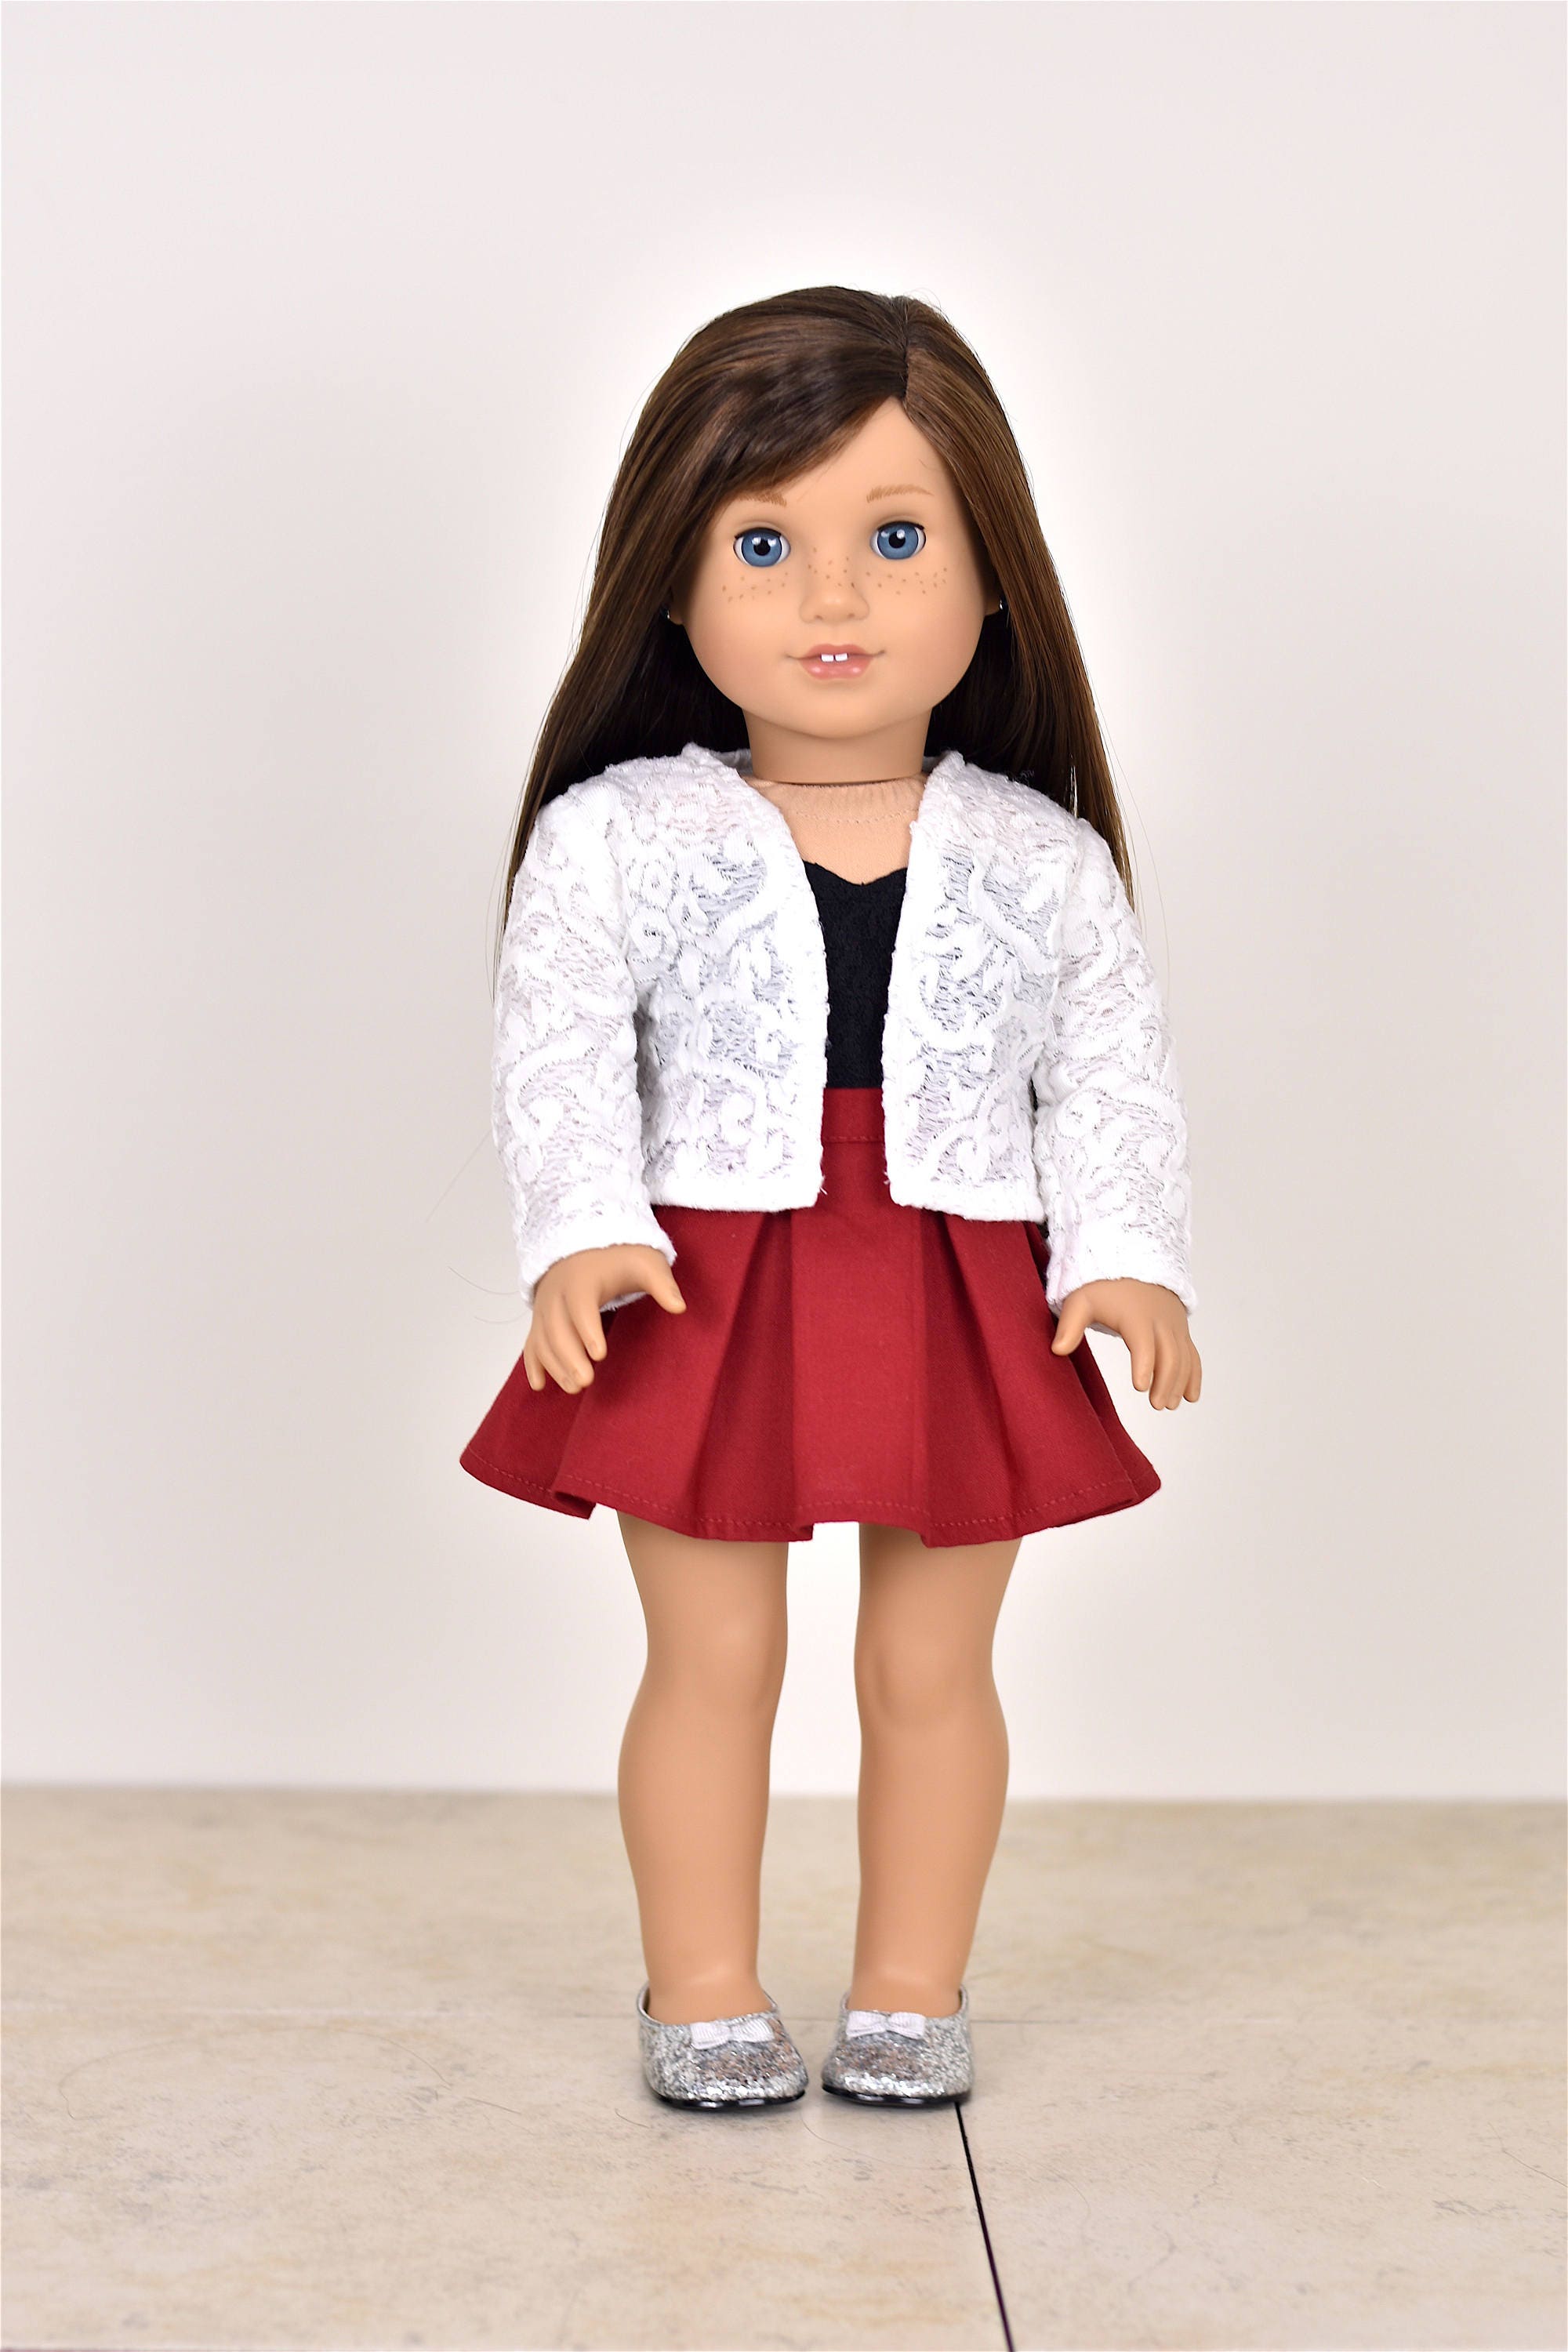 Lace Cardigan 18 inch doll clothes EliteDollWorld EDW